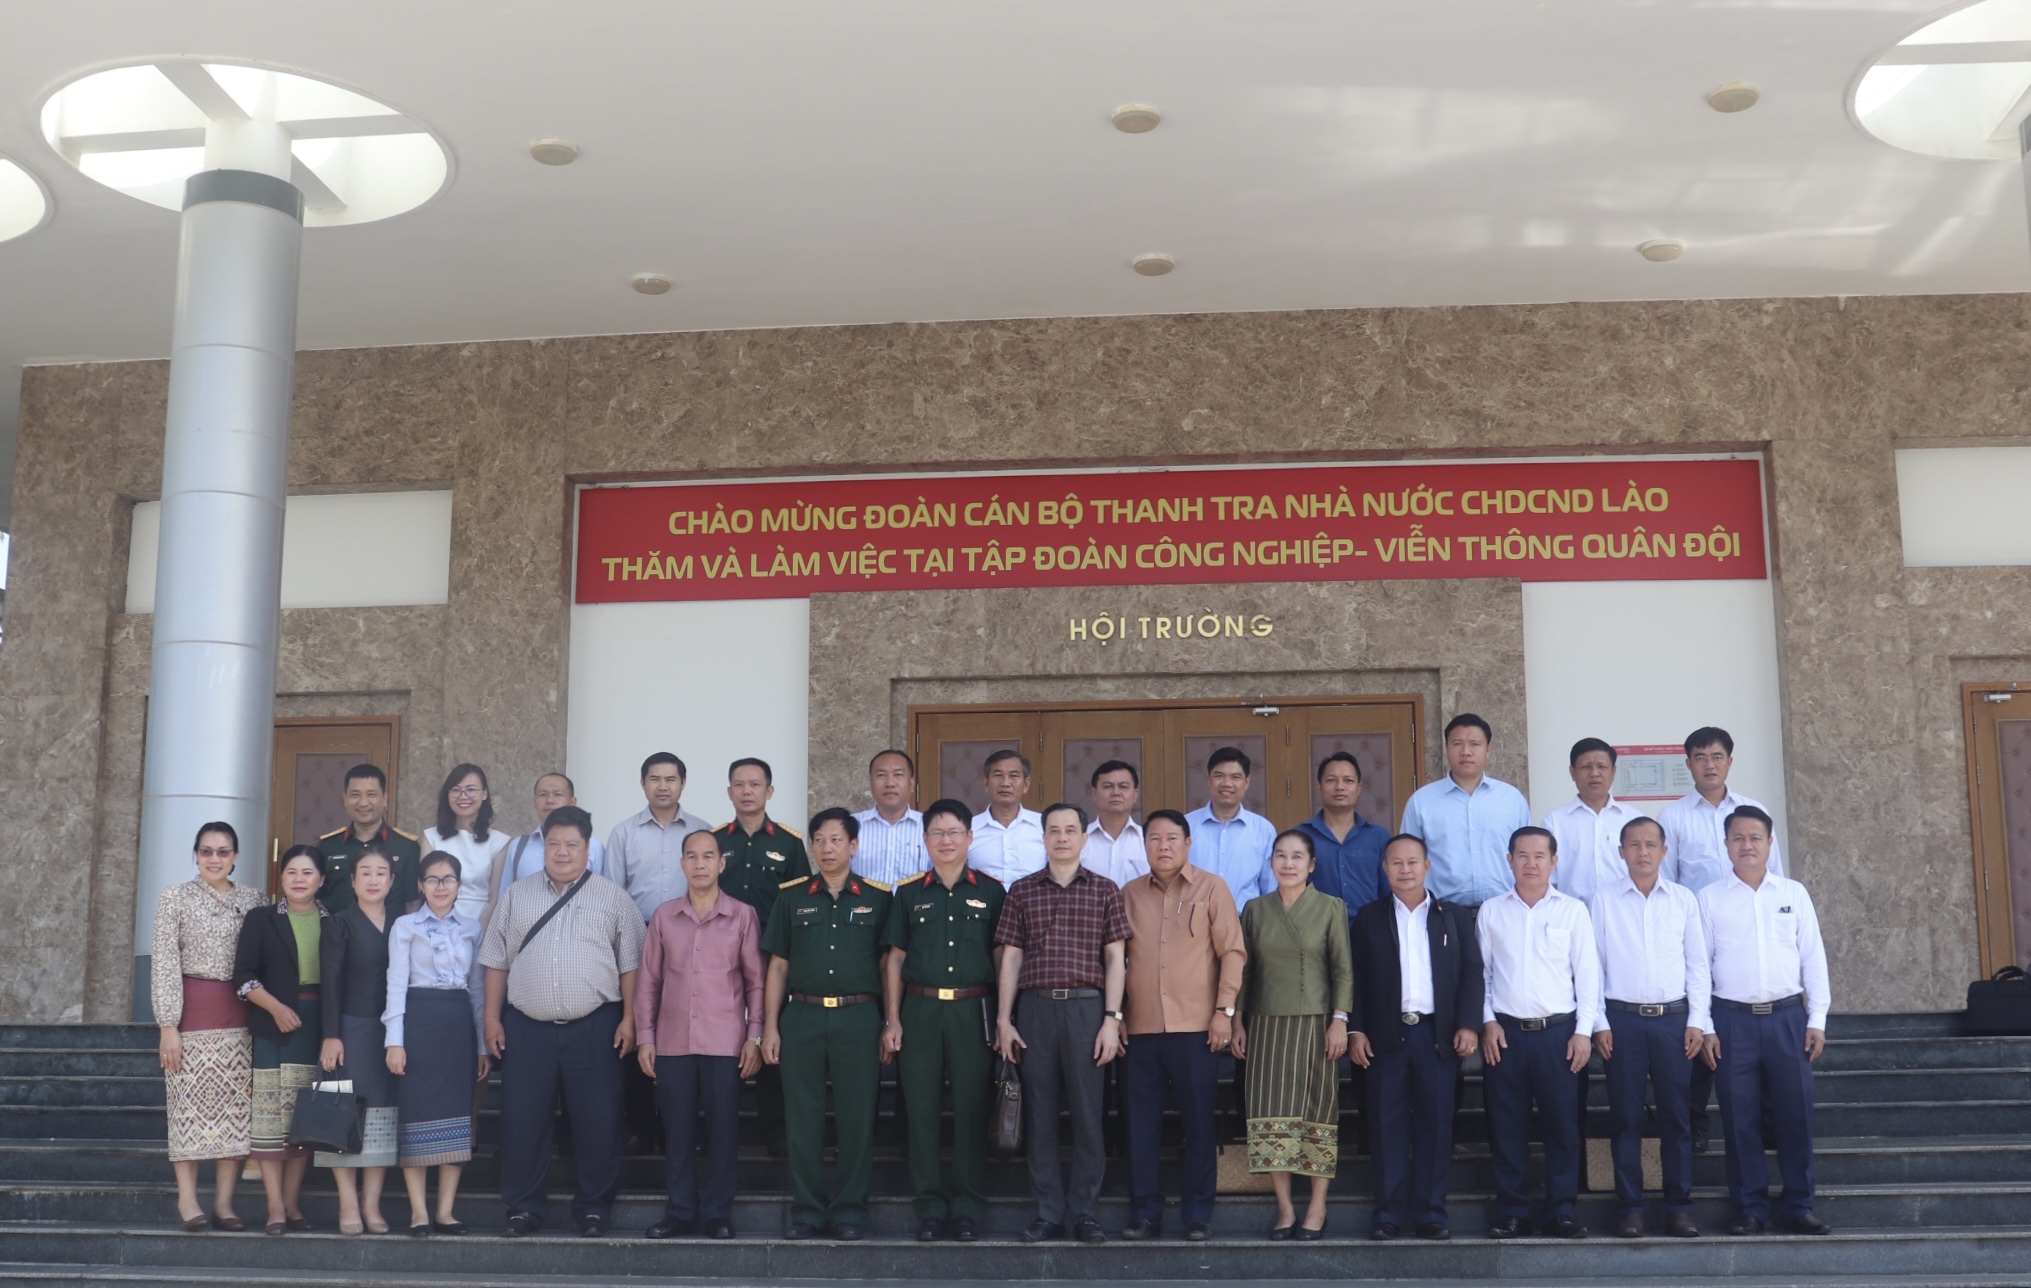 Đoàn Cán bộ Thanh tra Nhà nước Lào đã thăm và làm việc tại Tập đoàn Công nghệ Viễn thông Quân đội Việt Nam (Viettel)